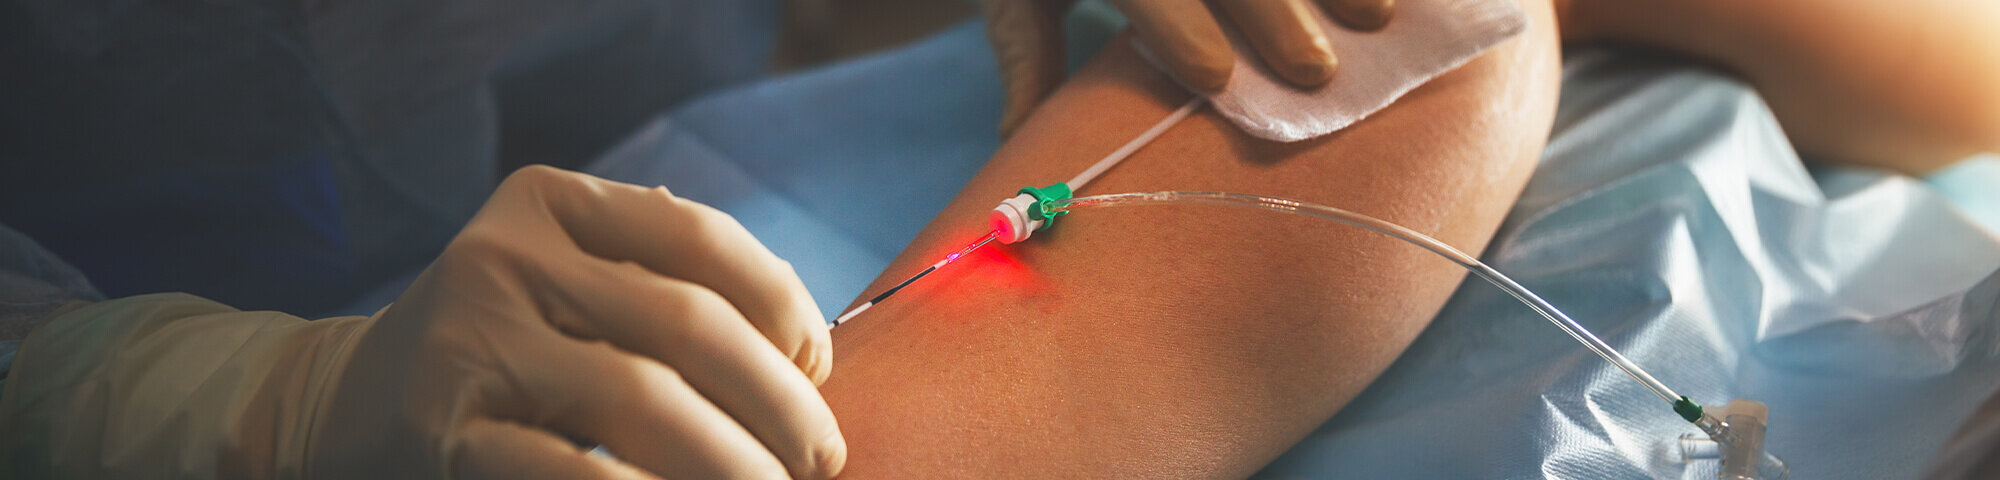 Arzt mit feiner Nadel am Bein einer Patientin bei gefäßchirurgischer Operation